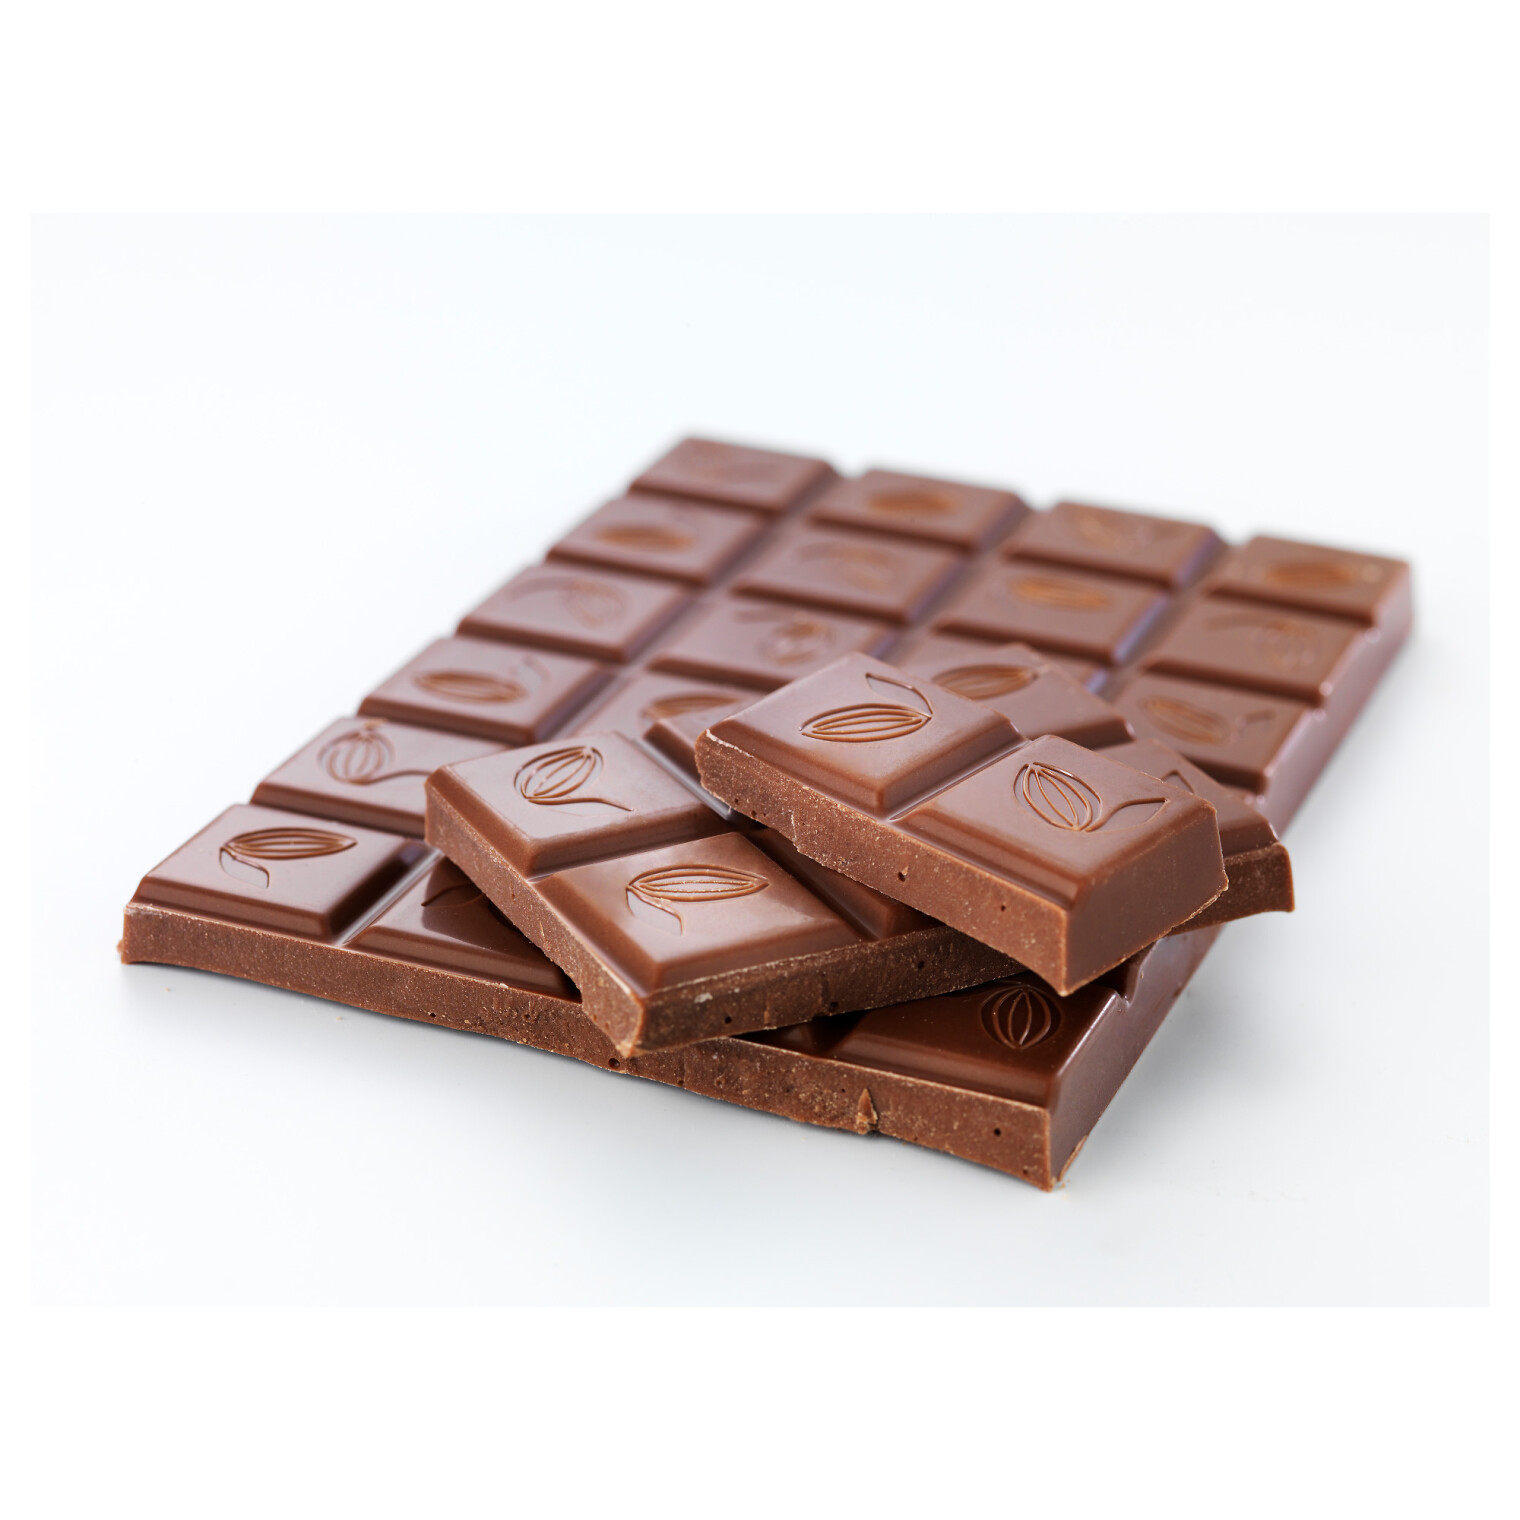 Недорогой шоколад. Молочный шоколад икеа. Шоколад LJUS. Шведский шоколад икеа. Плитка шоколада с орехами.